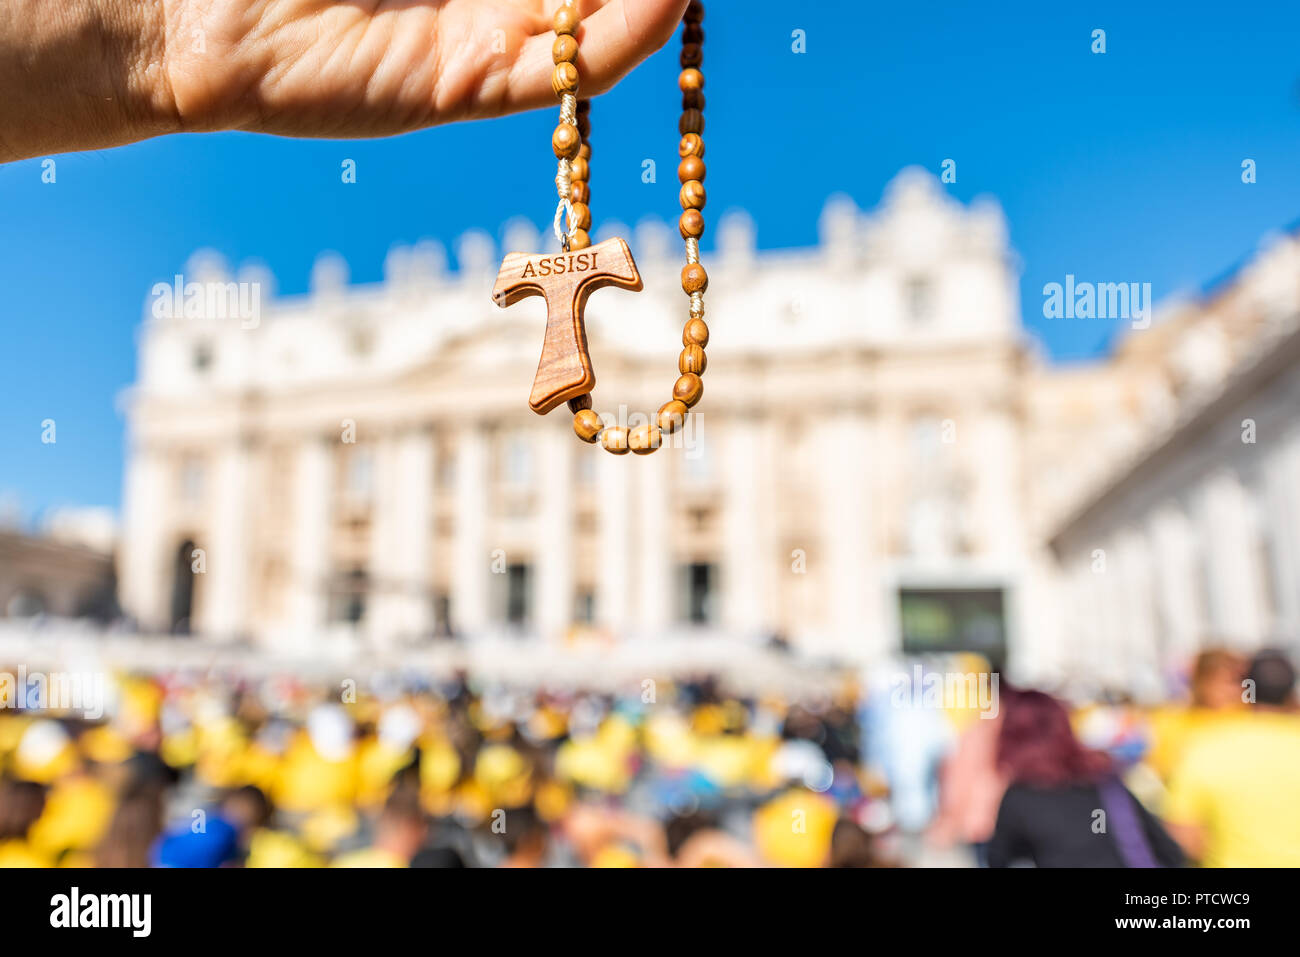 Makro Nahaufnahme von Holz- handgefertigte italienische Kreuz katholische Assisi Rosenkranz mit bokeh Hintergrund der Vatikan Kirche St. Peter's Square Basilika während der Messe o Stockfoto